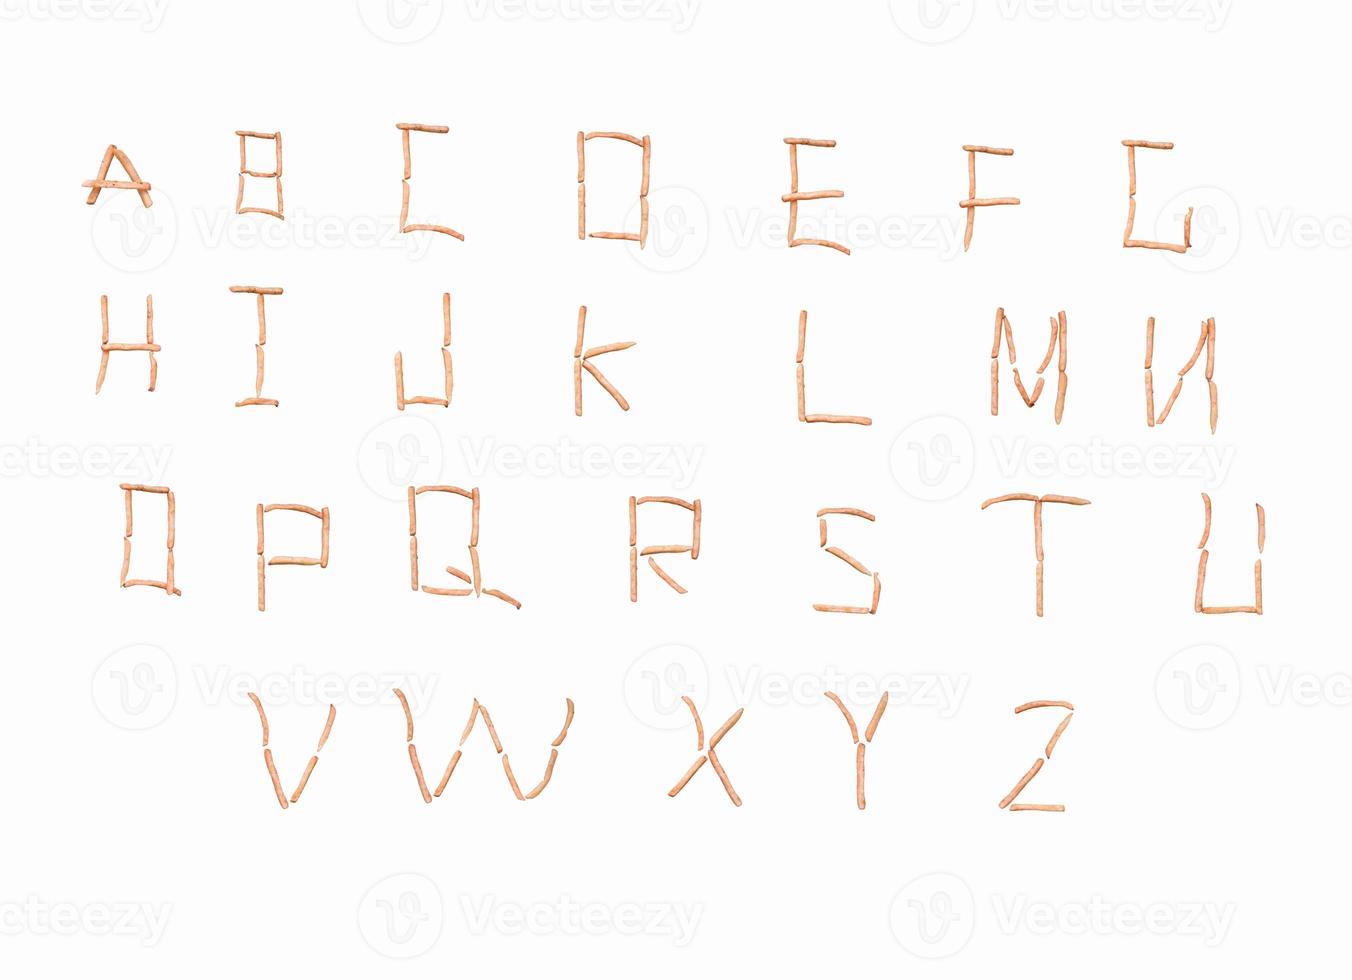 lettres de l'alphabet anglais disposées à partir de frites photo